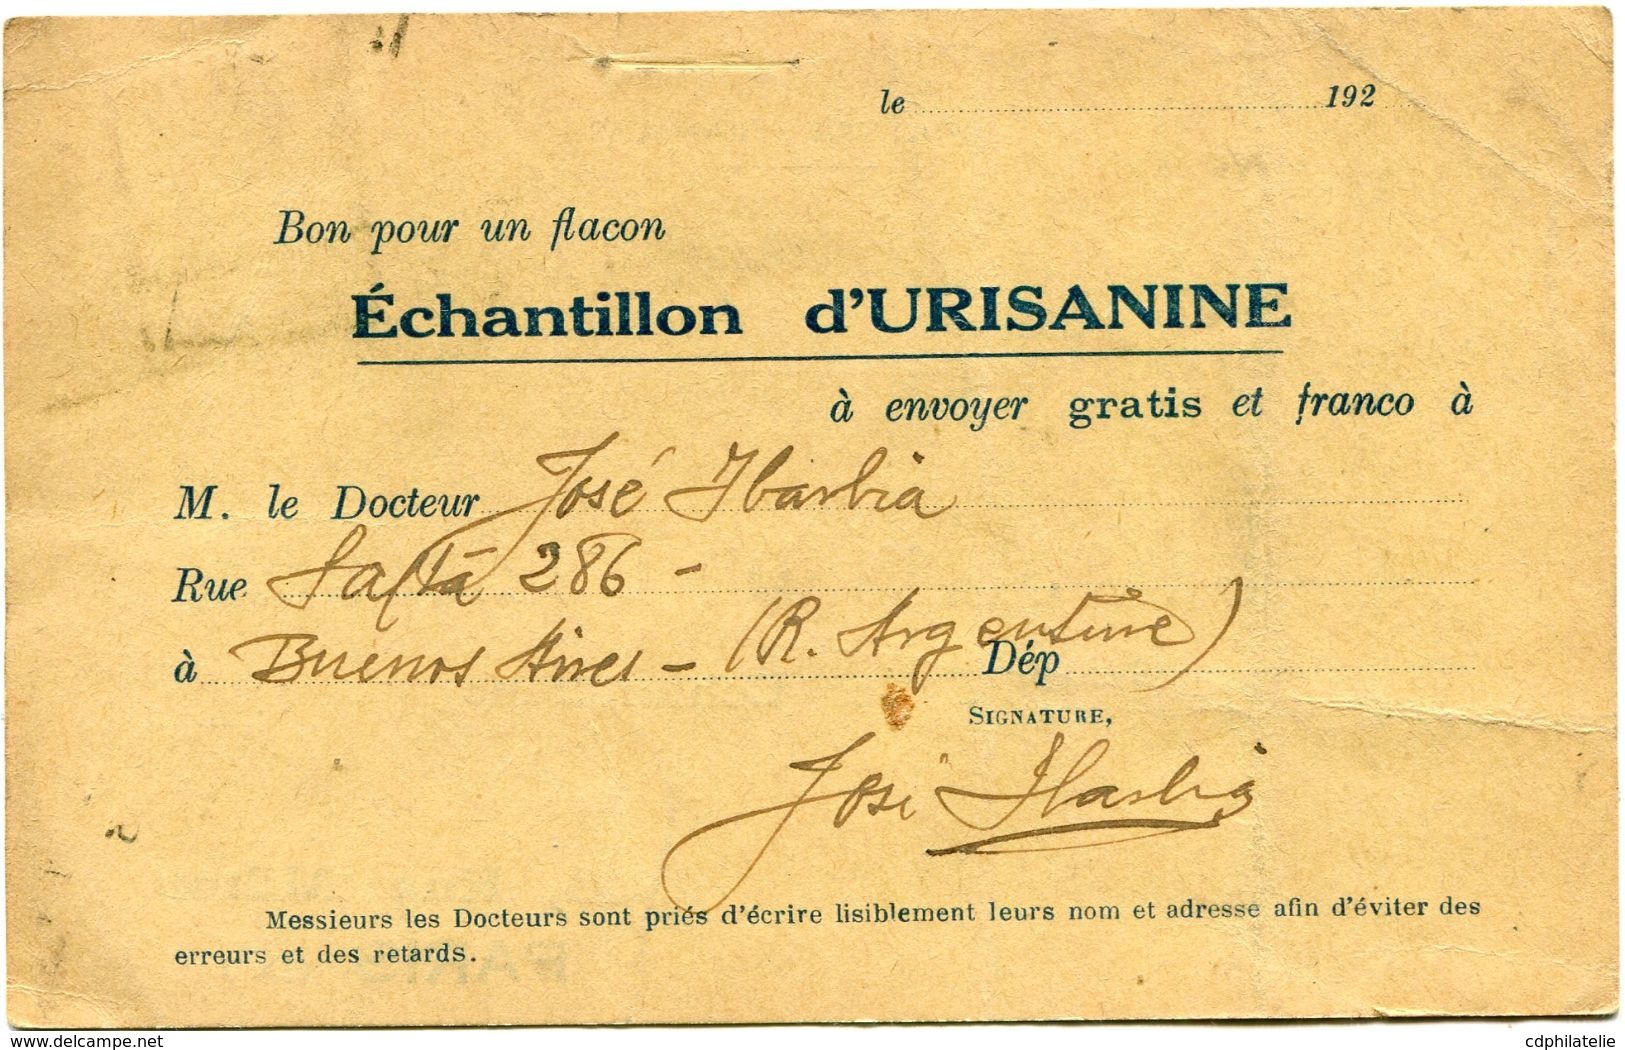 ARGENTINE CARTE POSTALE BON POUR UN FLACON ECHANTILLON D'URISANINE DEPART BUENOS AIRES ENE 29  1923 POUR LA FRANCE - Covers & Documents